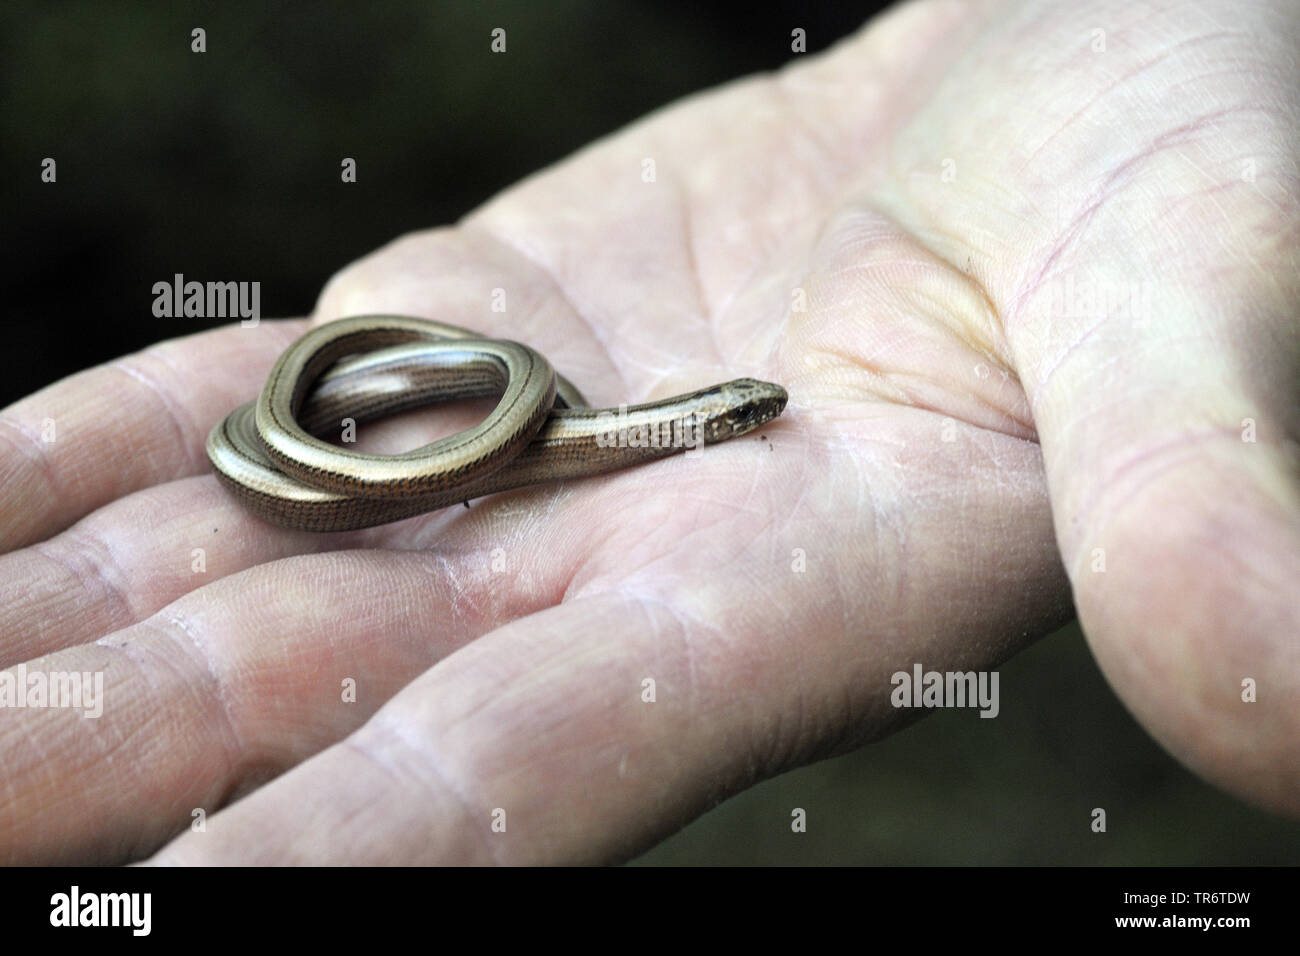 Europäische langsam Wurm, blindworm, Slow worm (Anguis fragilis), Coiled juvenil blindworm auf einer Hand, Deutschland, Nordrhein-Westfalen Stockfoto